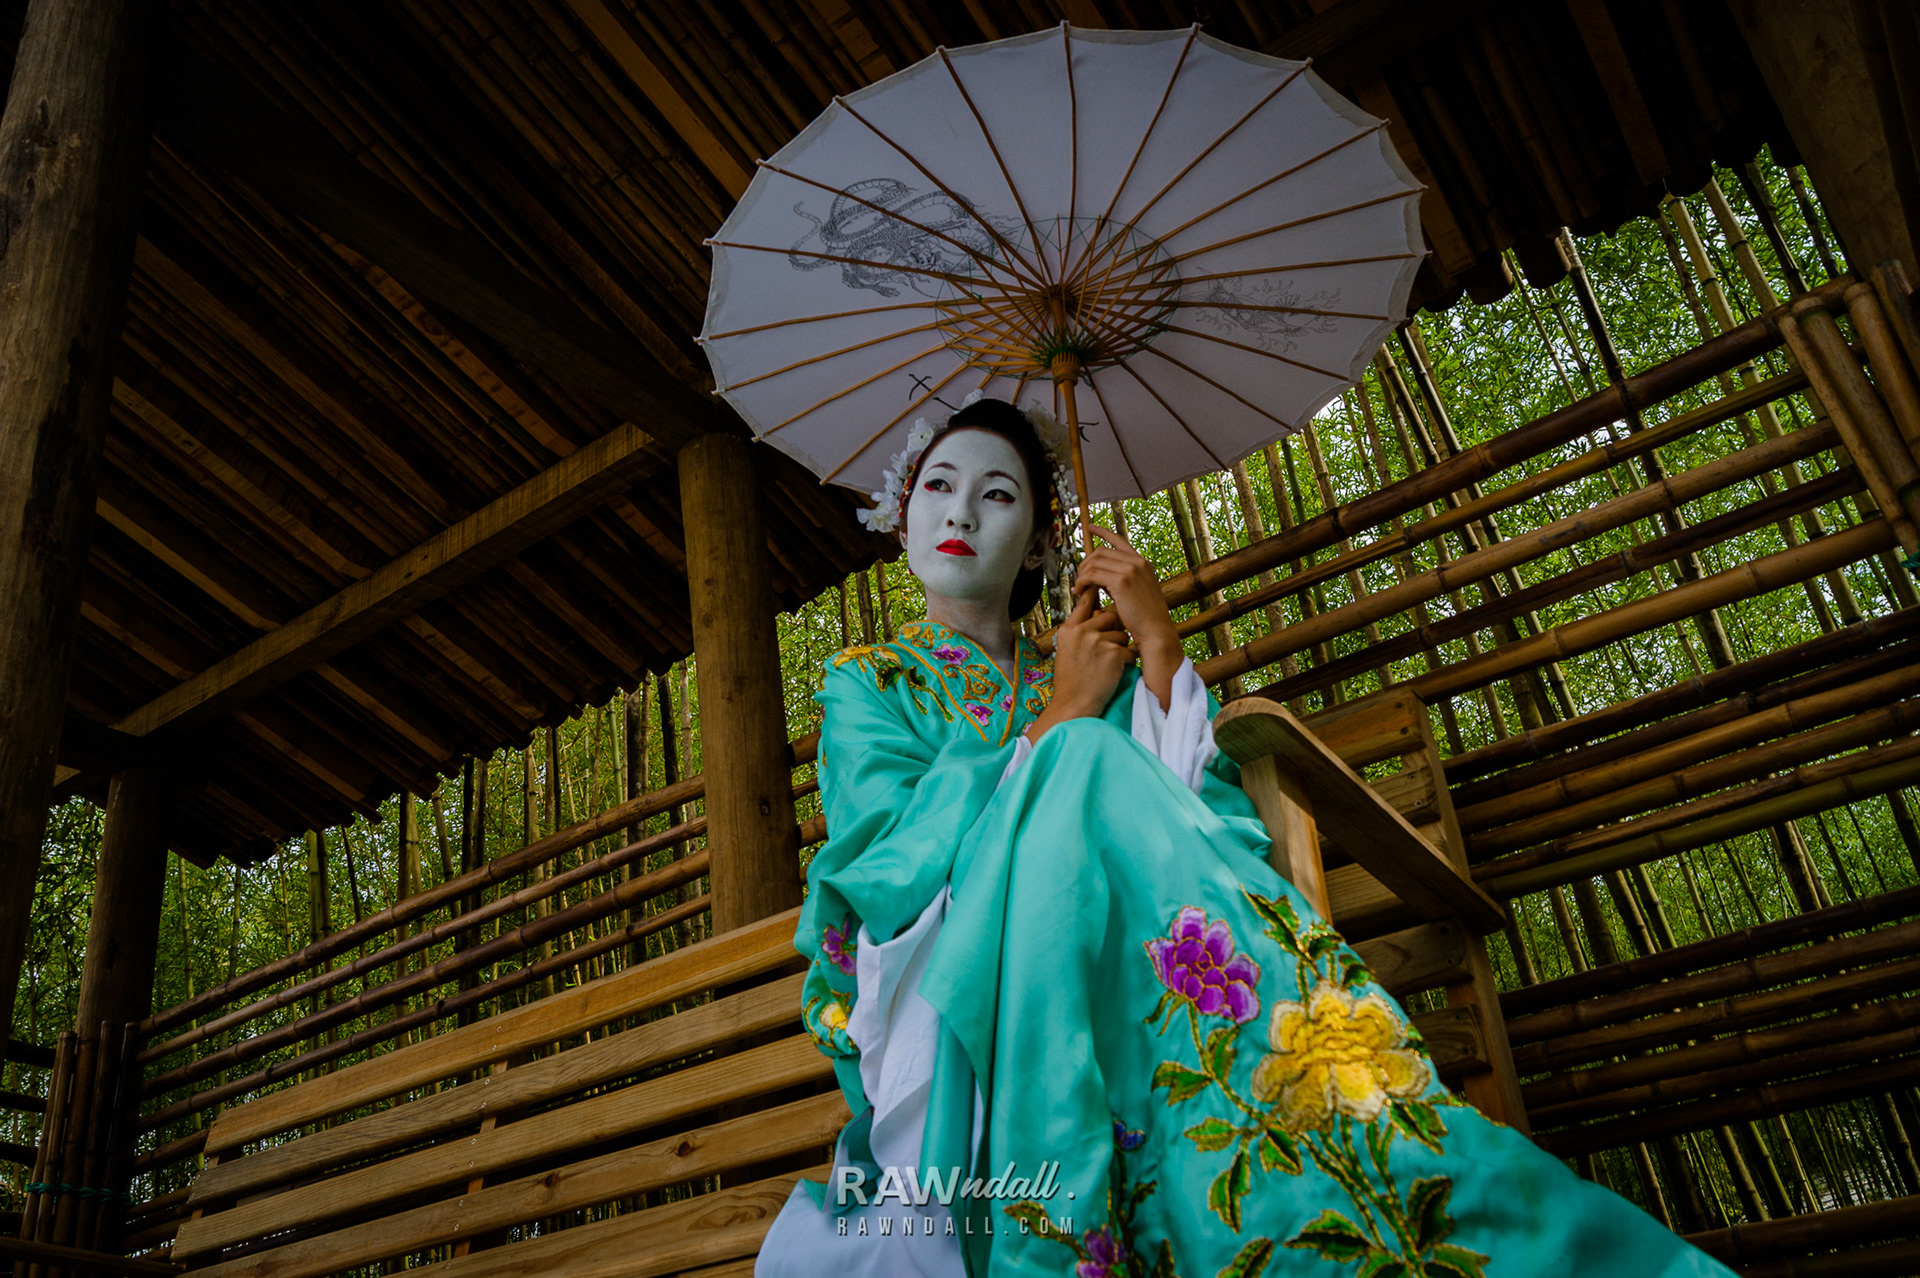 Mujer geisha en bosque de bambú.